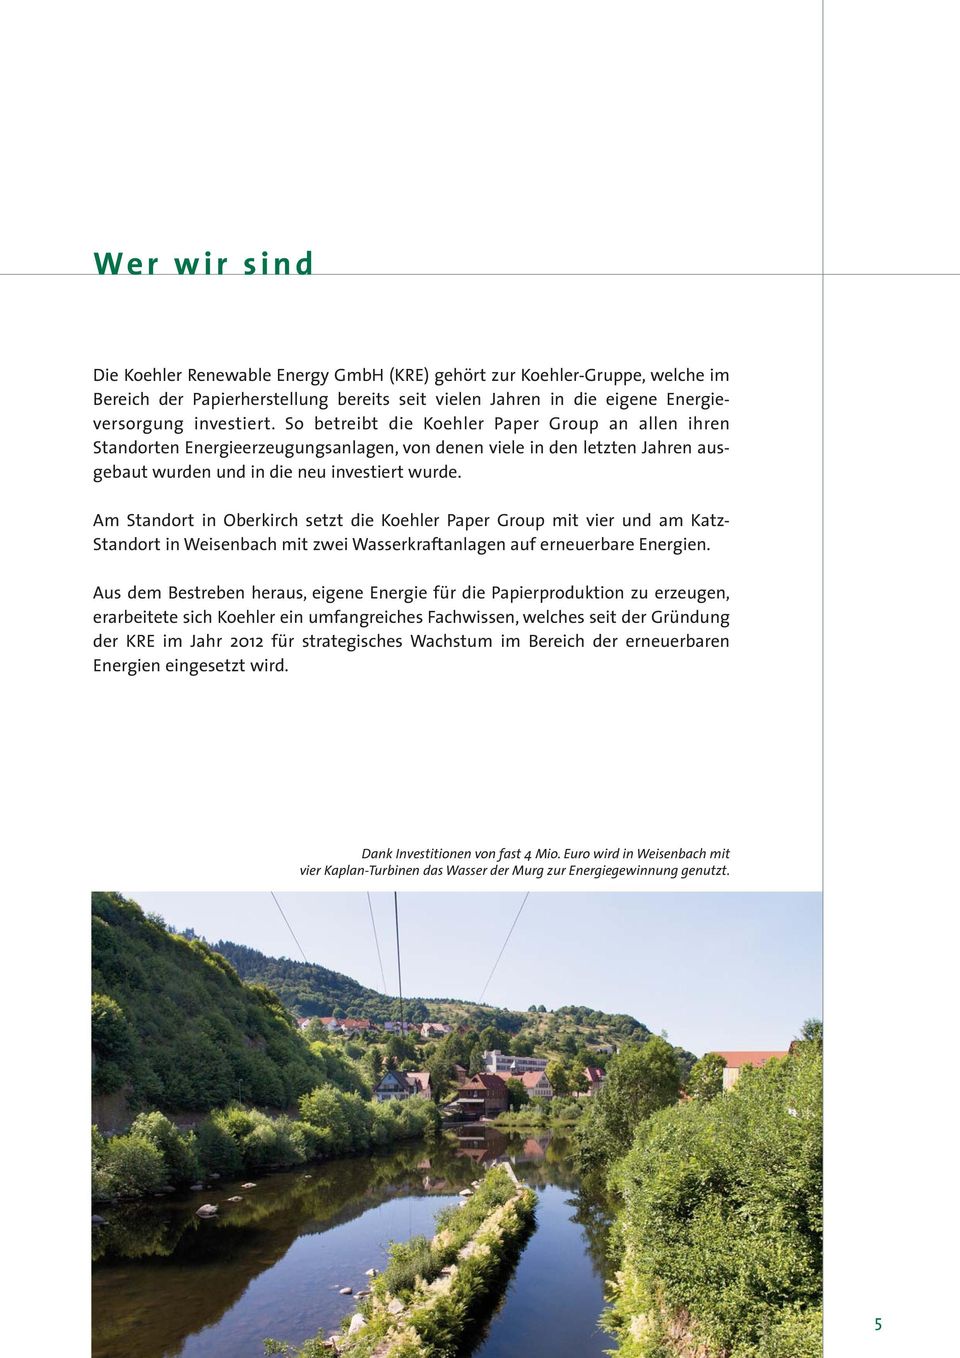 Am Standort in Oberkirch setzt die Koehler Paper Group mit vier und am Katz- Standort in Weisenbach mit zwei Wasserkraftanlagen auf erneuerbare Energien.